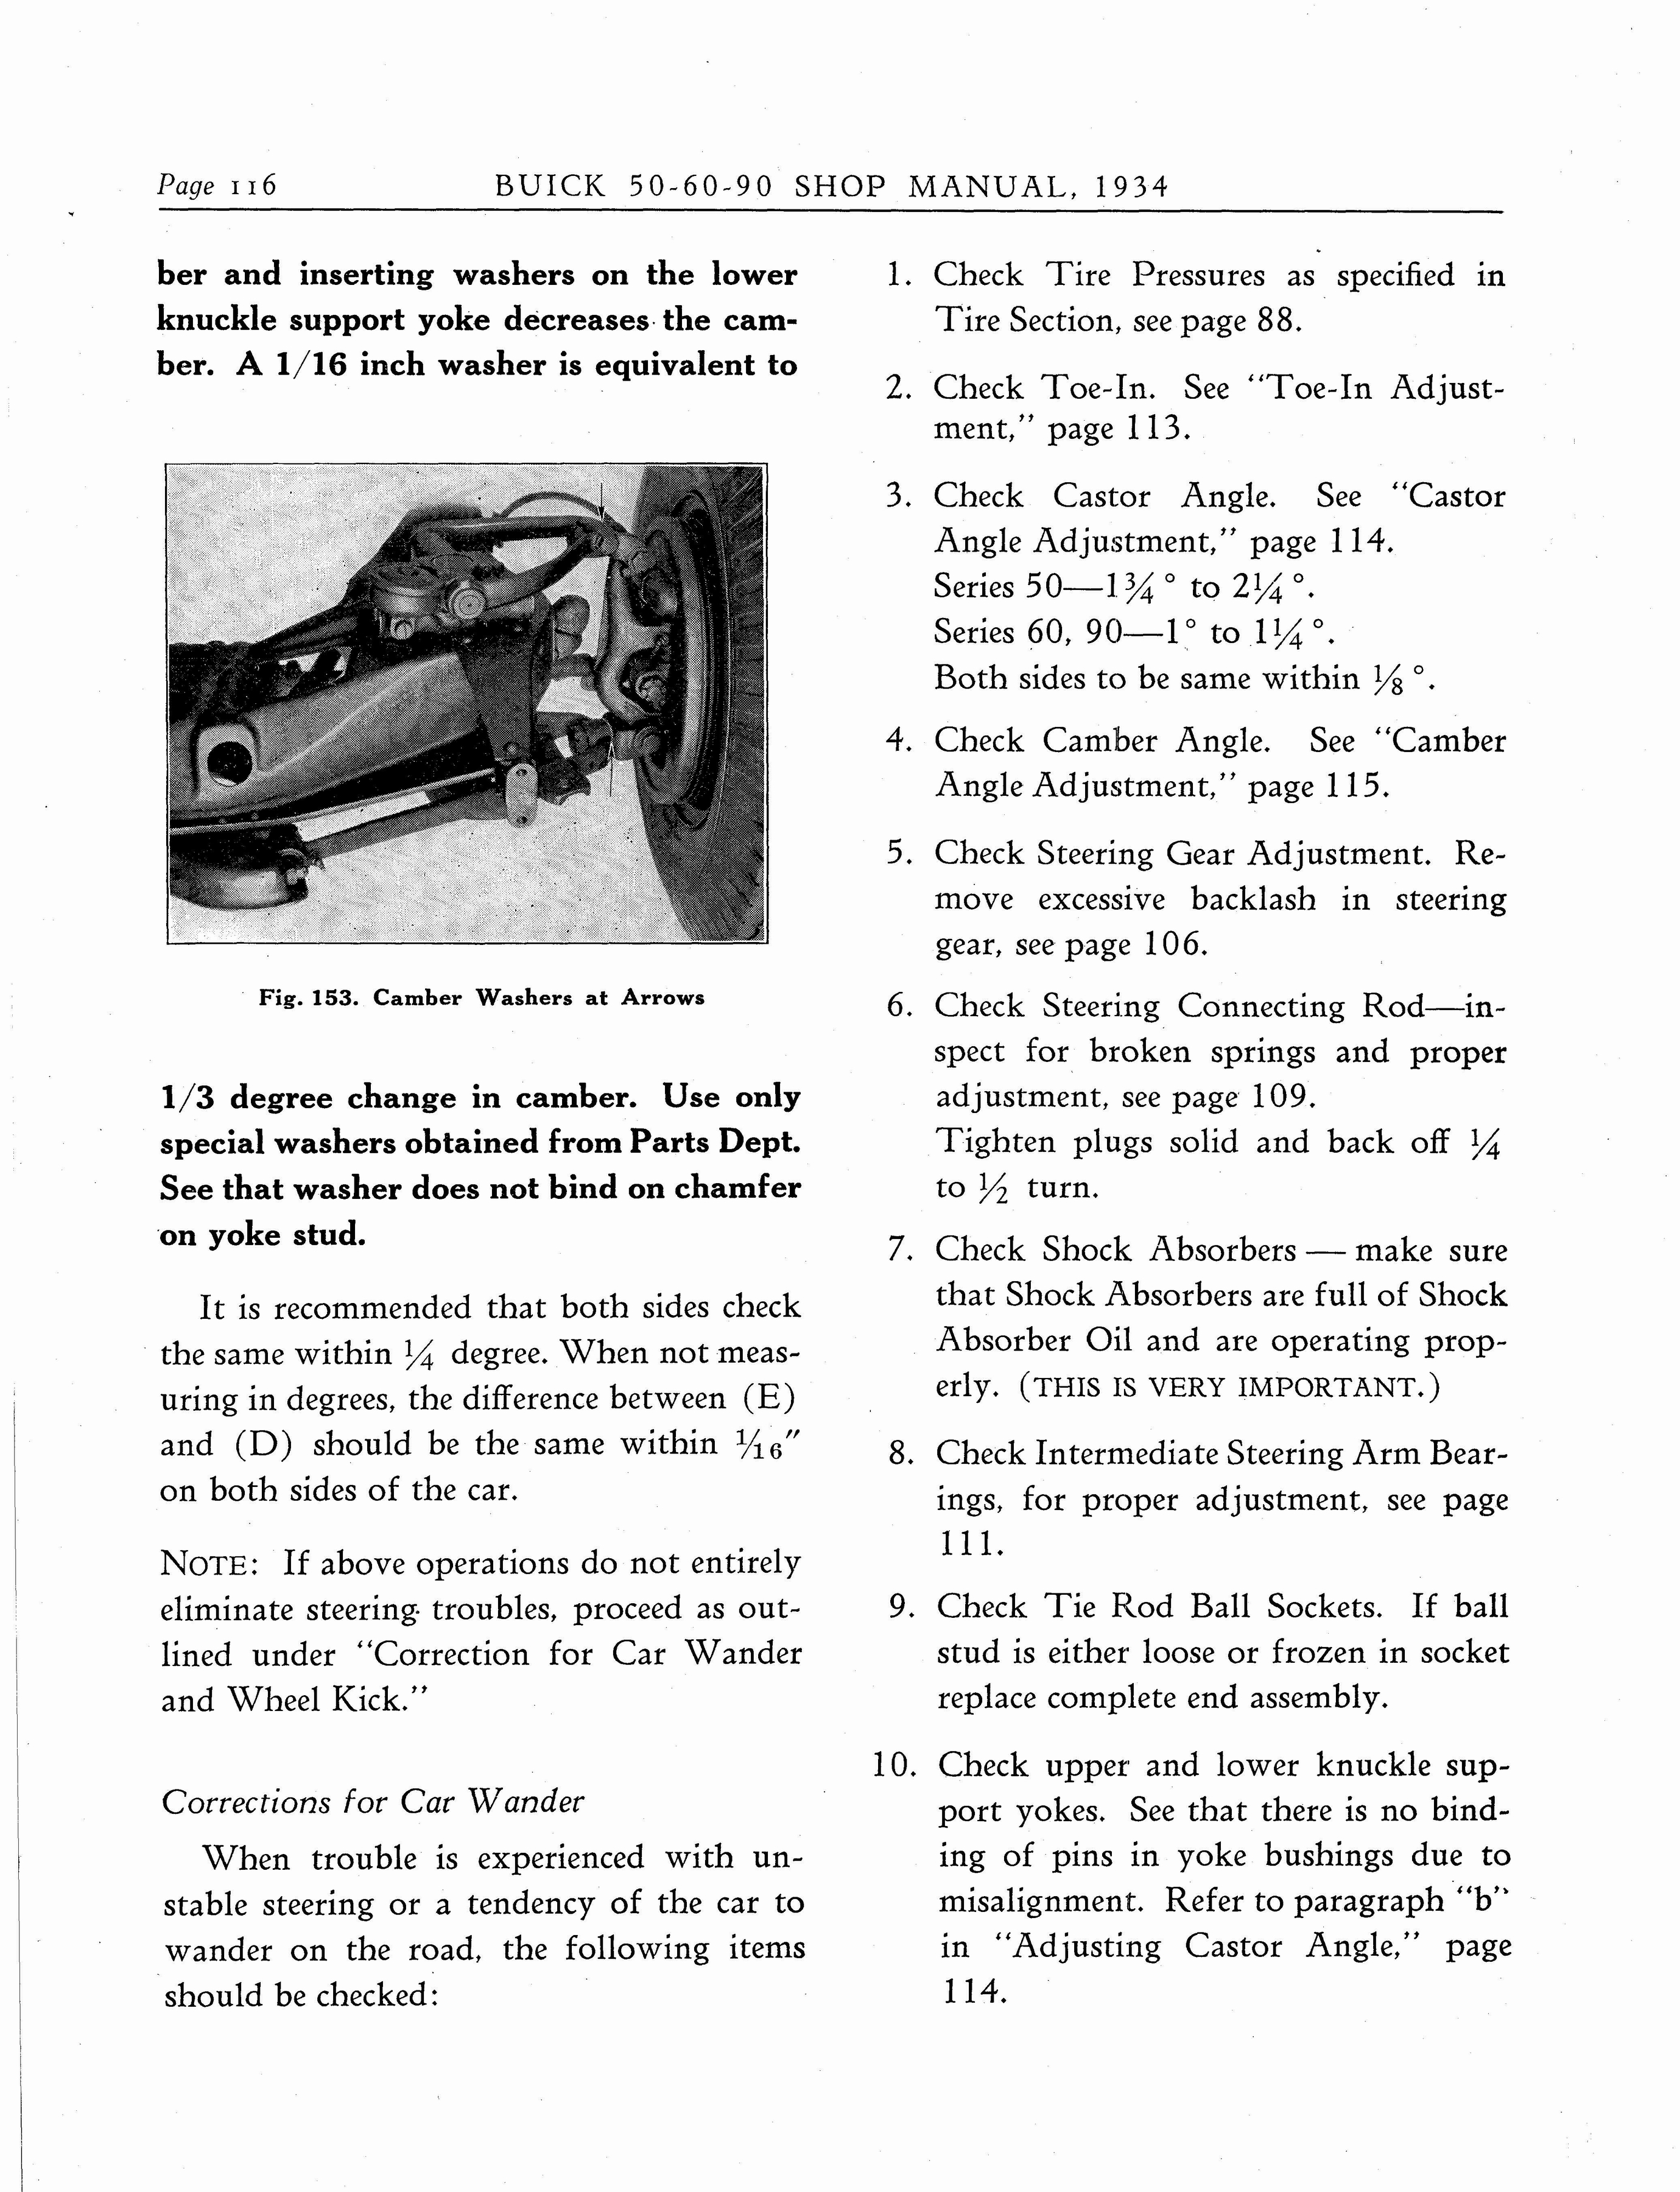 n_1934 Buick Series 50-60-90 Shop Manual_Page_117.jpg